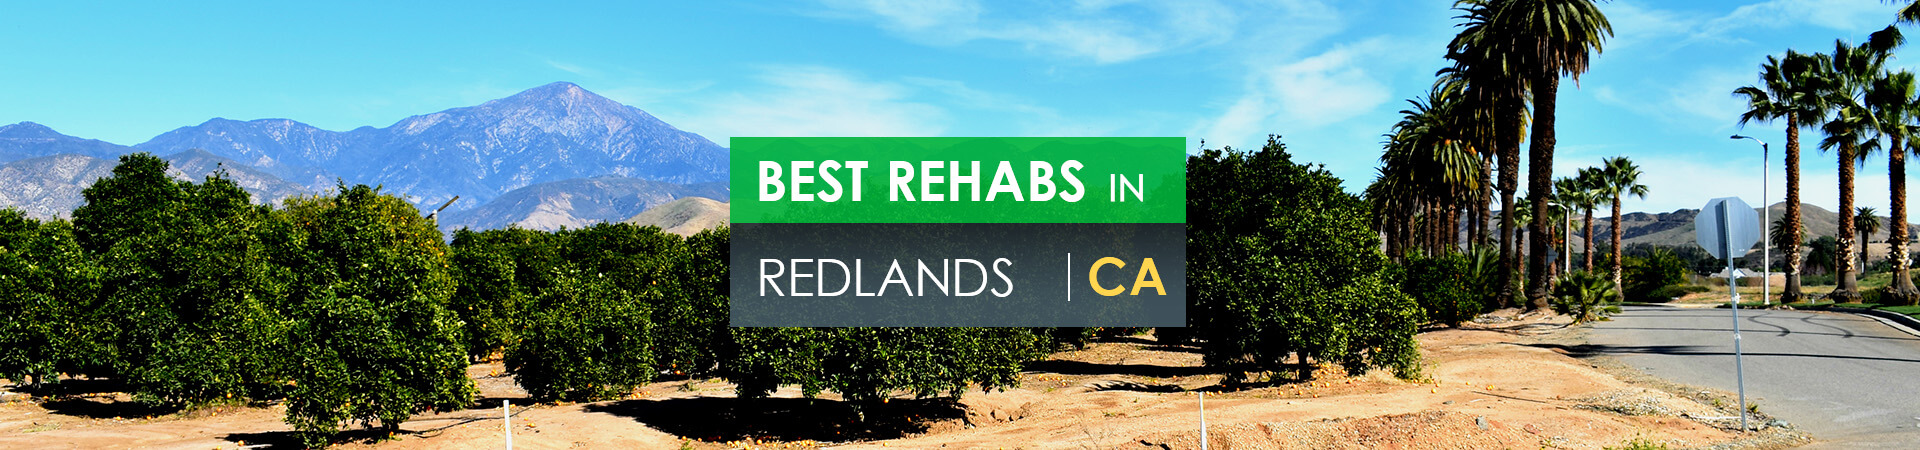 Best rehabs in Redlands, CA